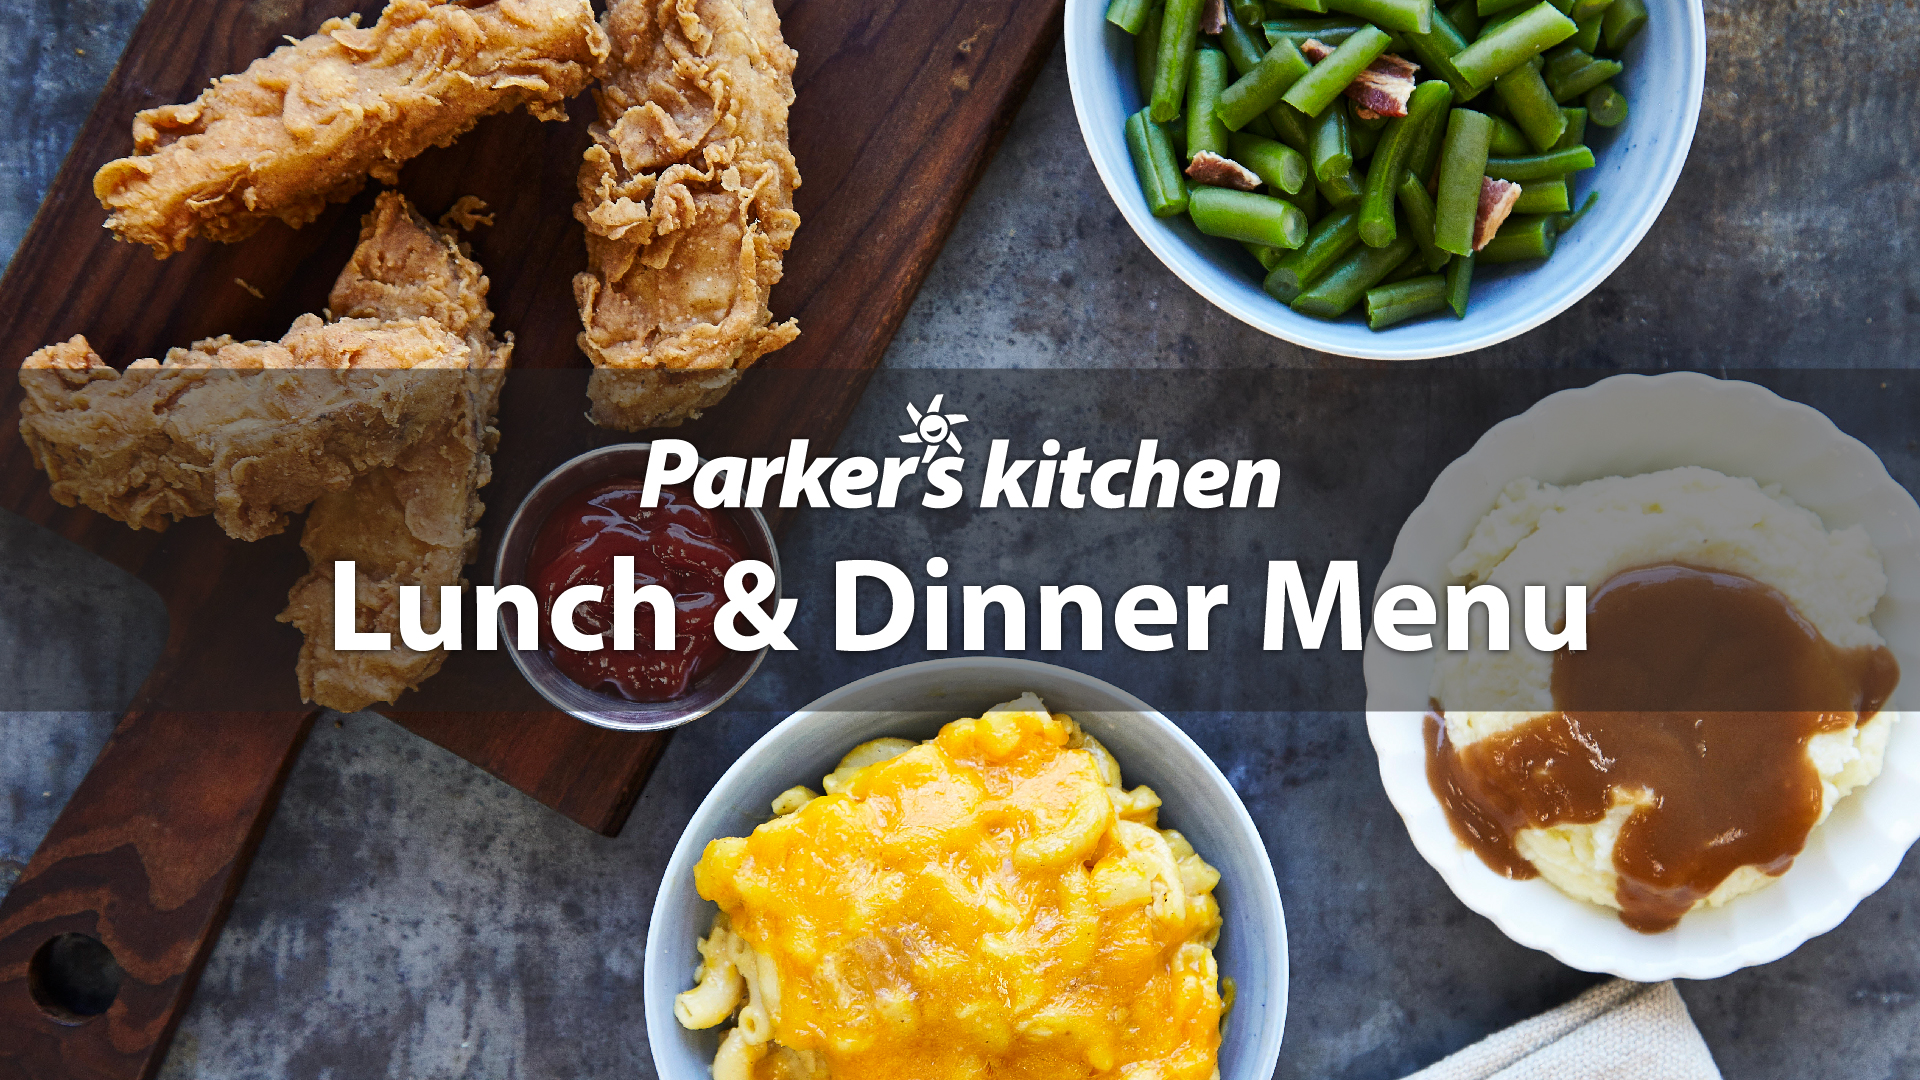 Parker's Kitchen Lunch & Dinner Menu